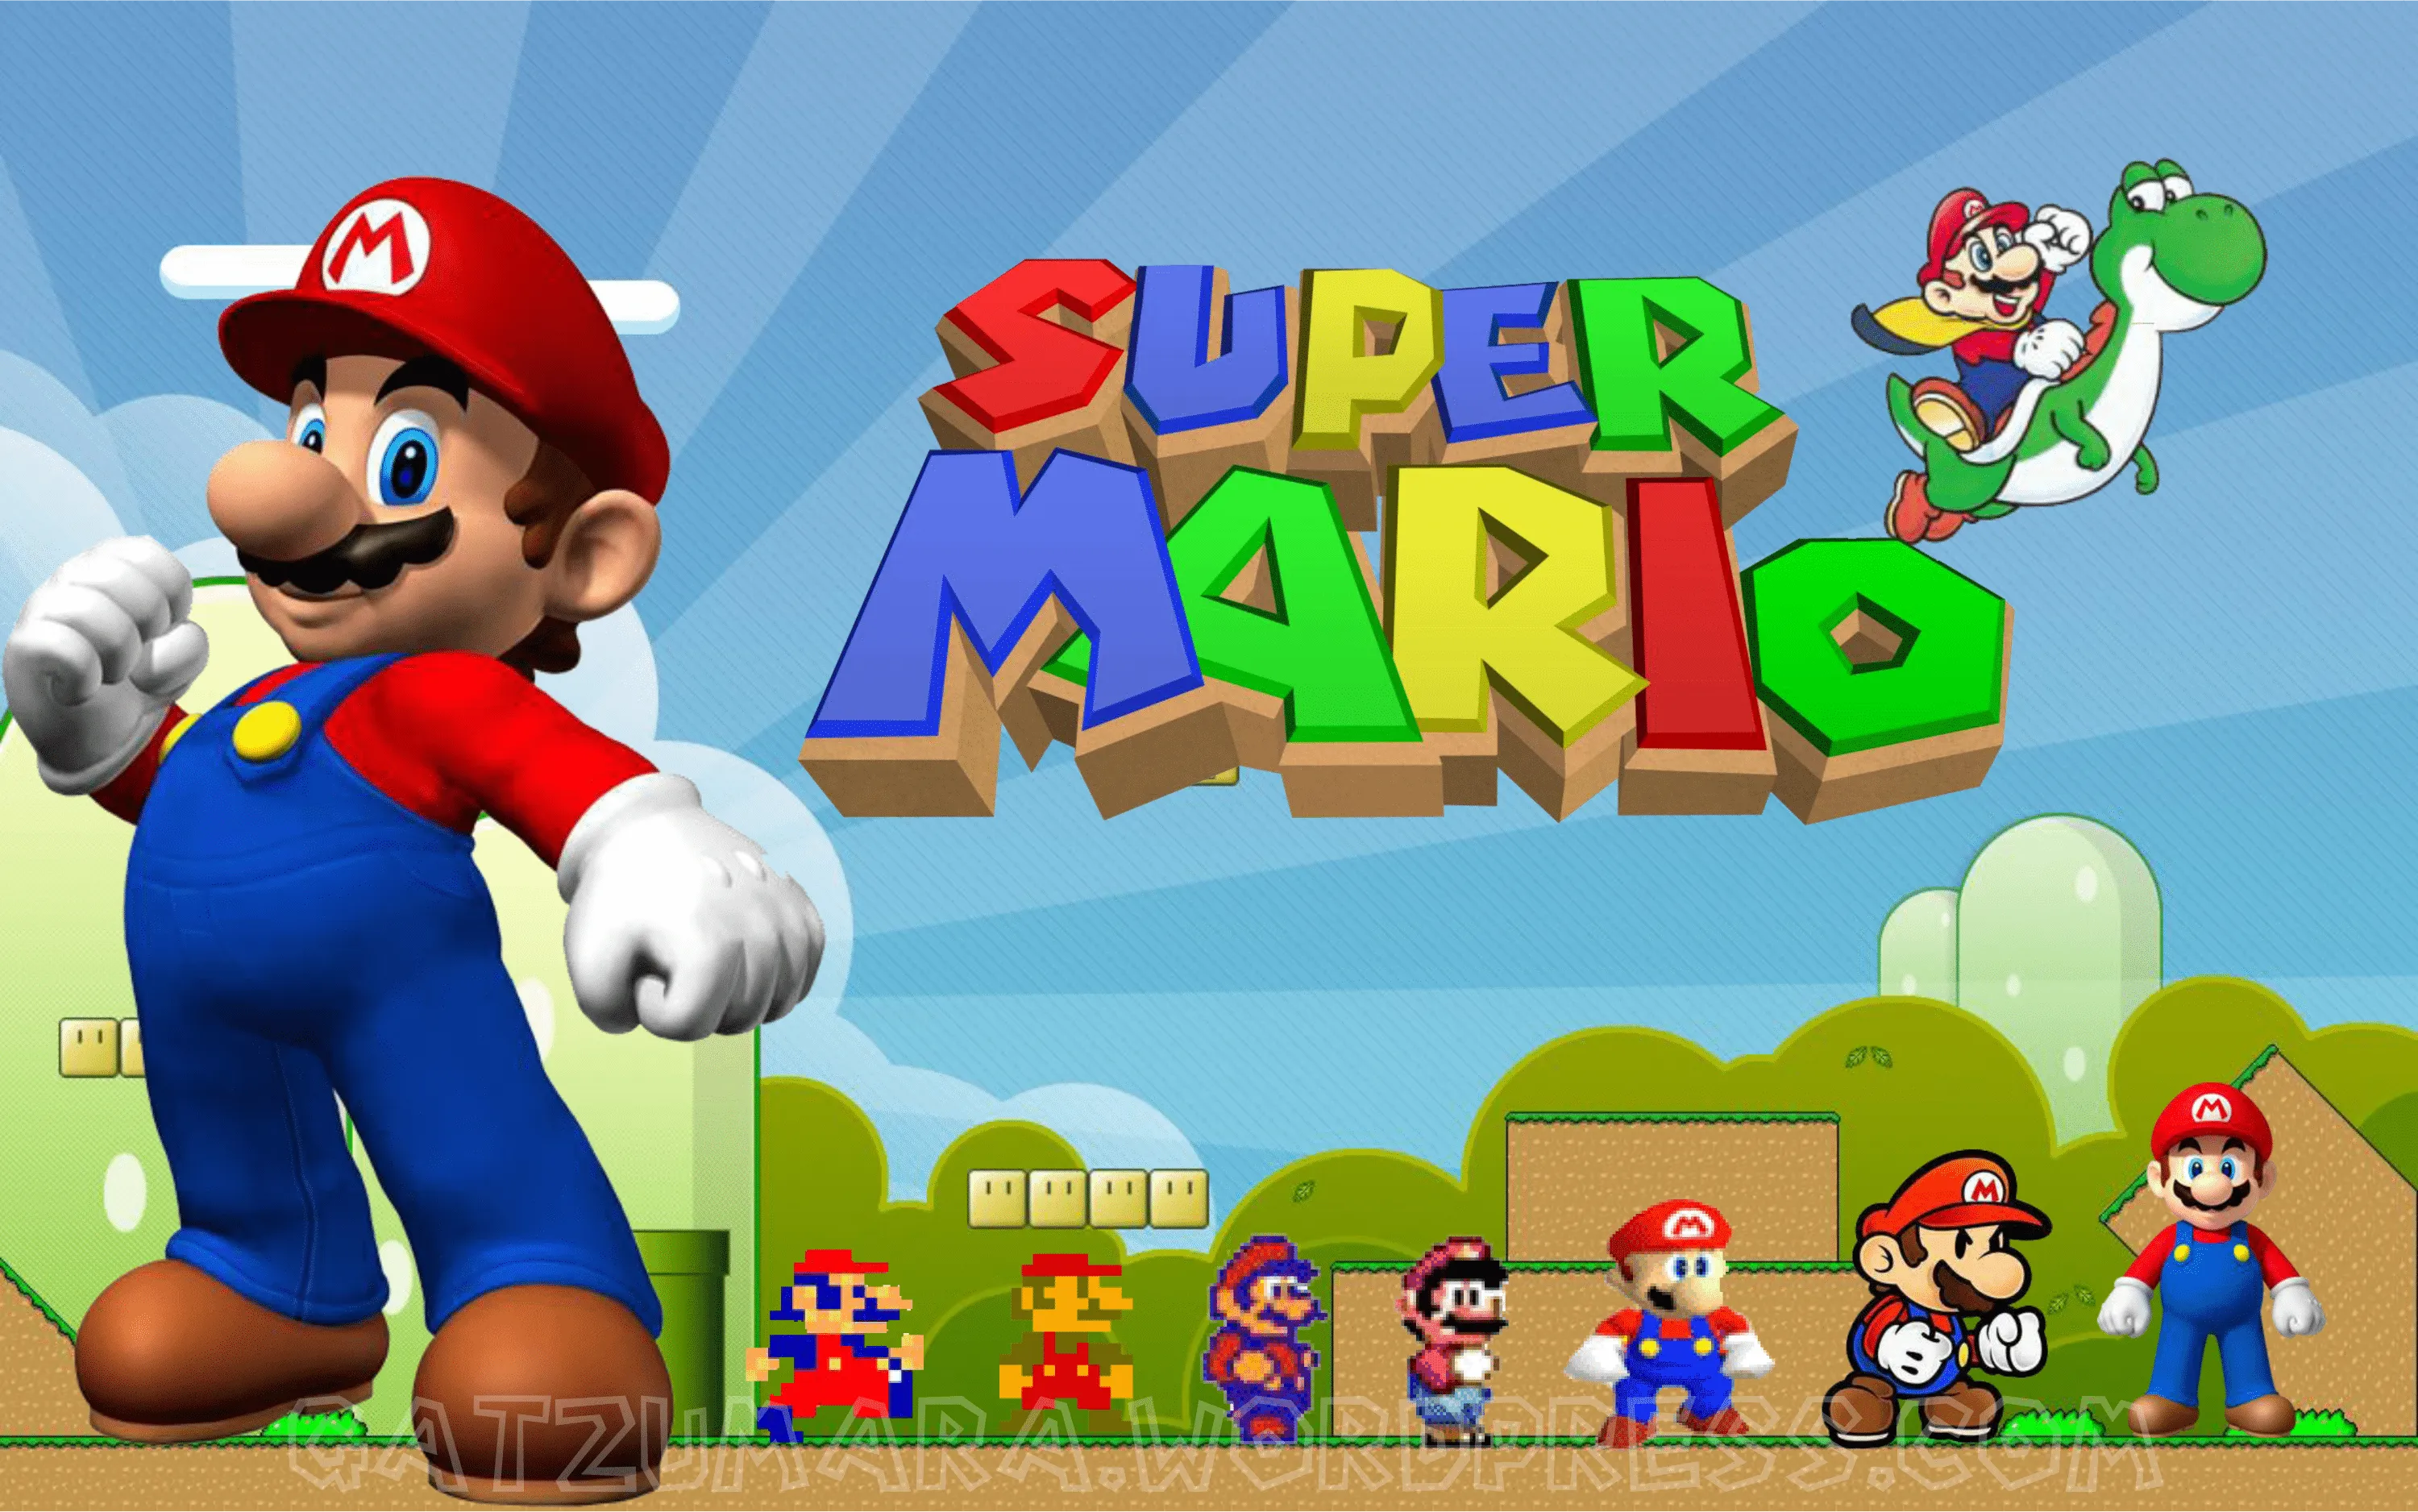 Mario Bros | Curiosidades sobre Videojuegos, Animación y Furry